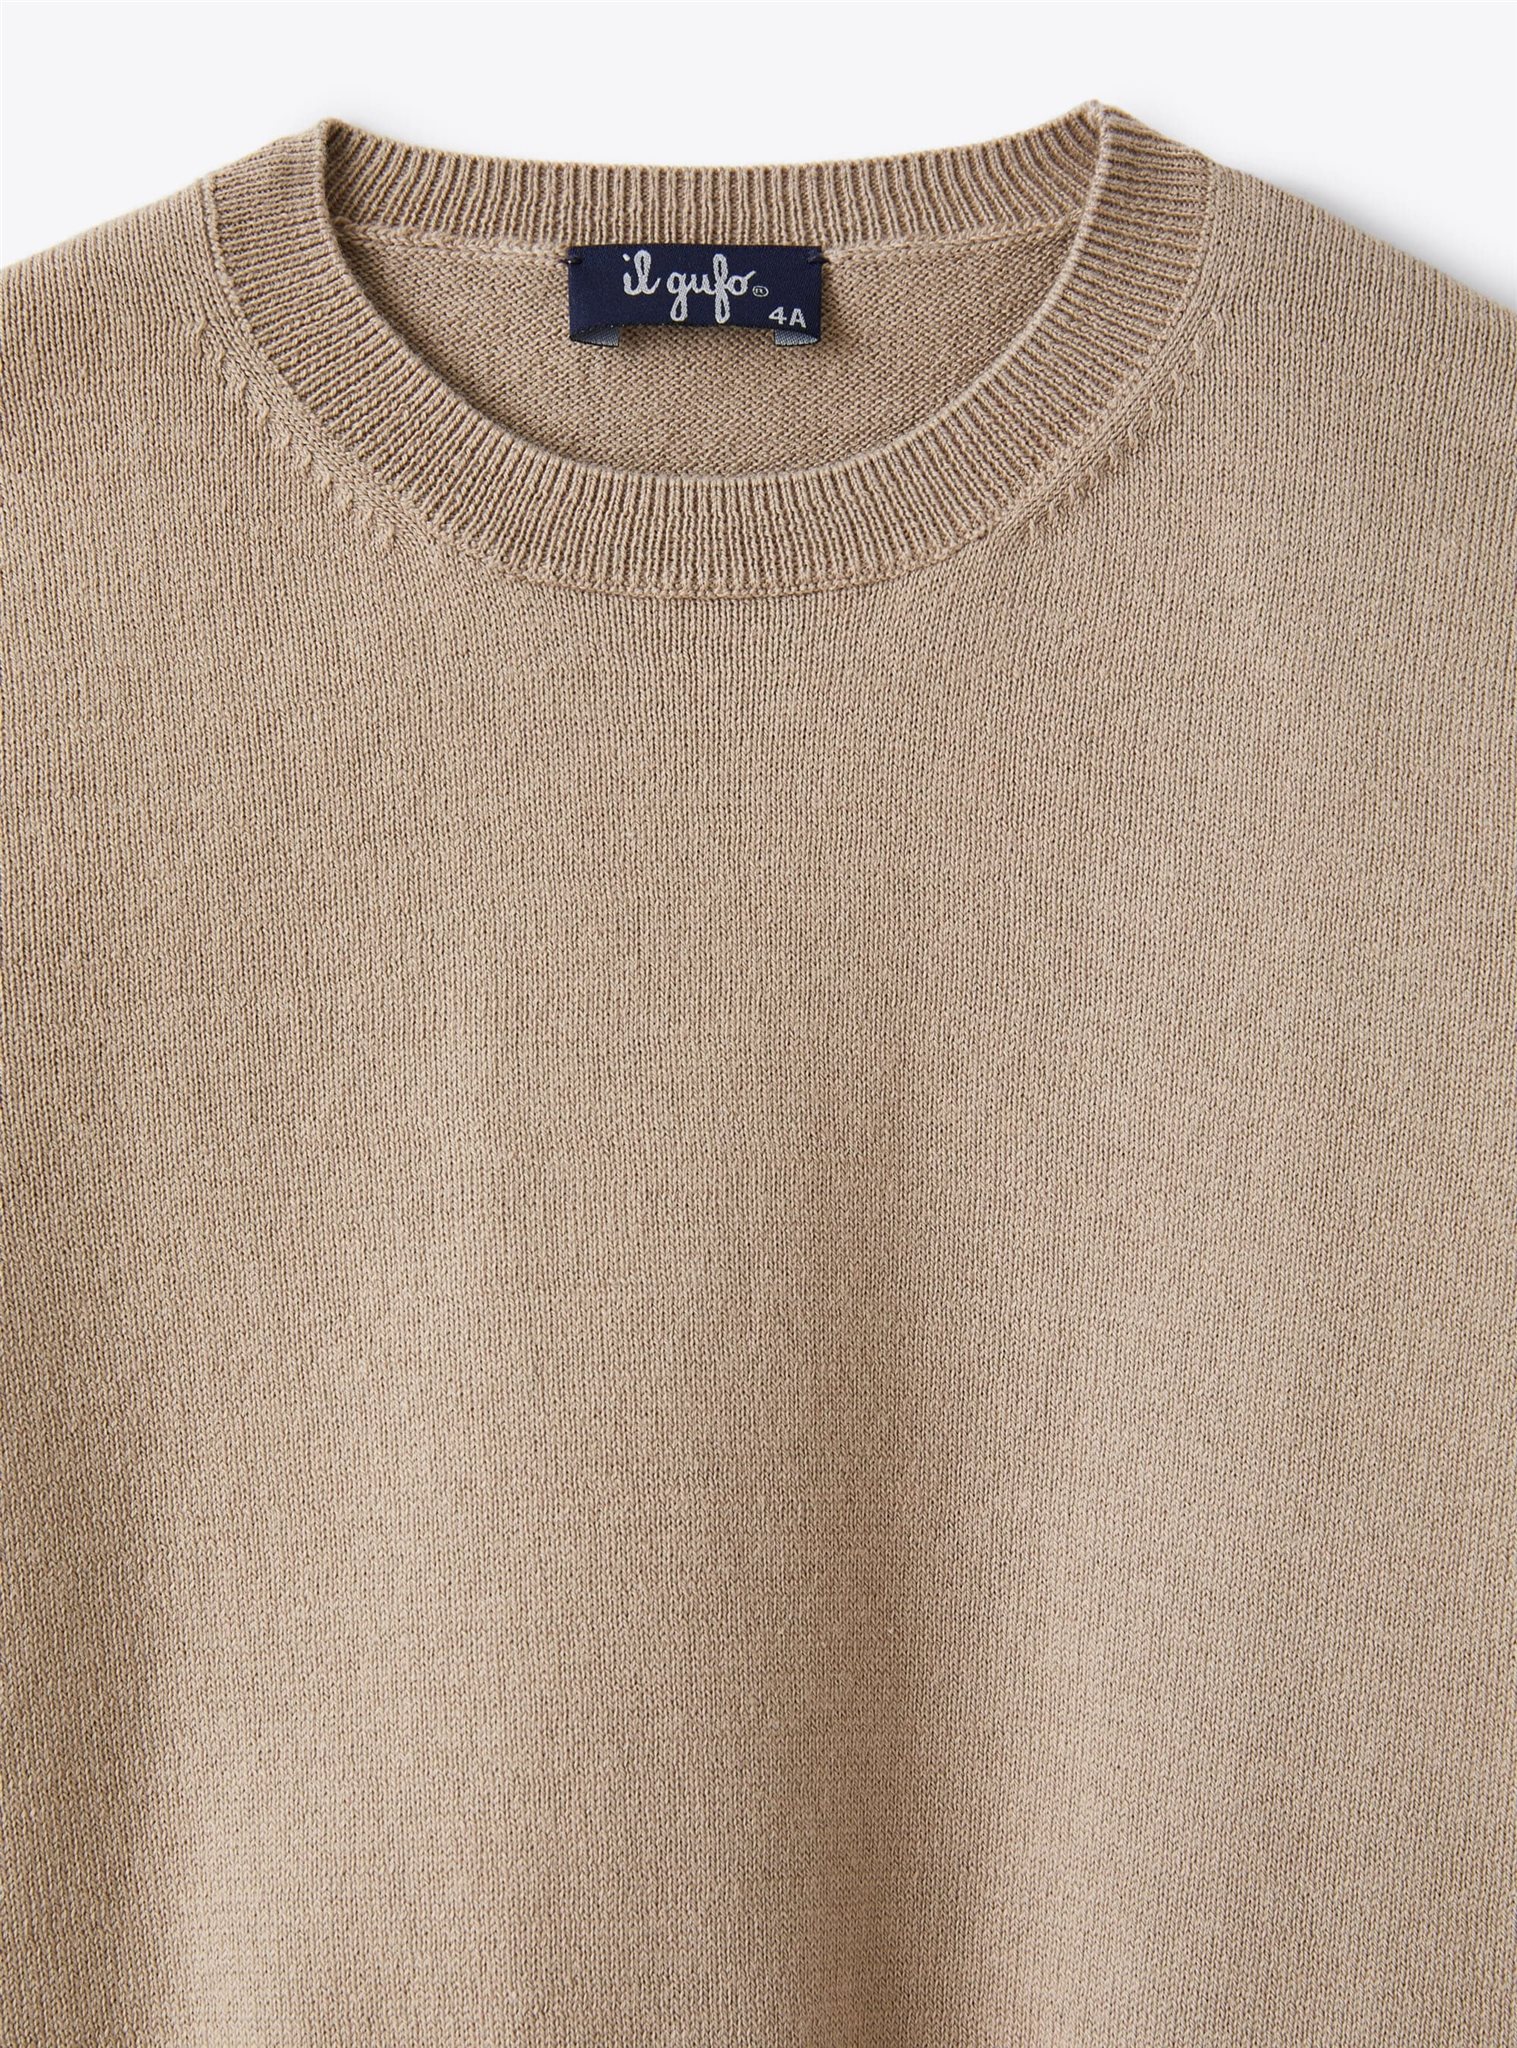 Il Gufo Sweater